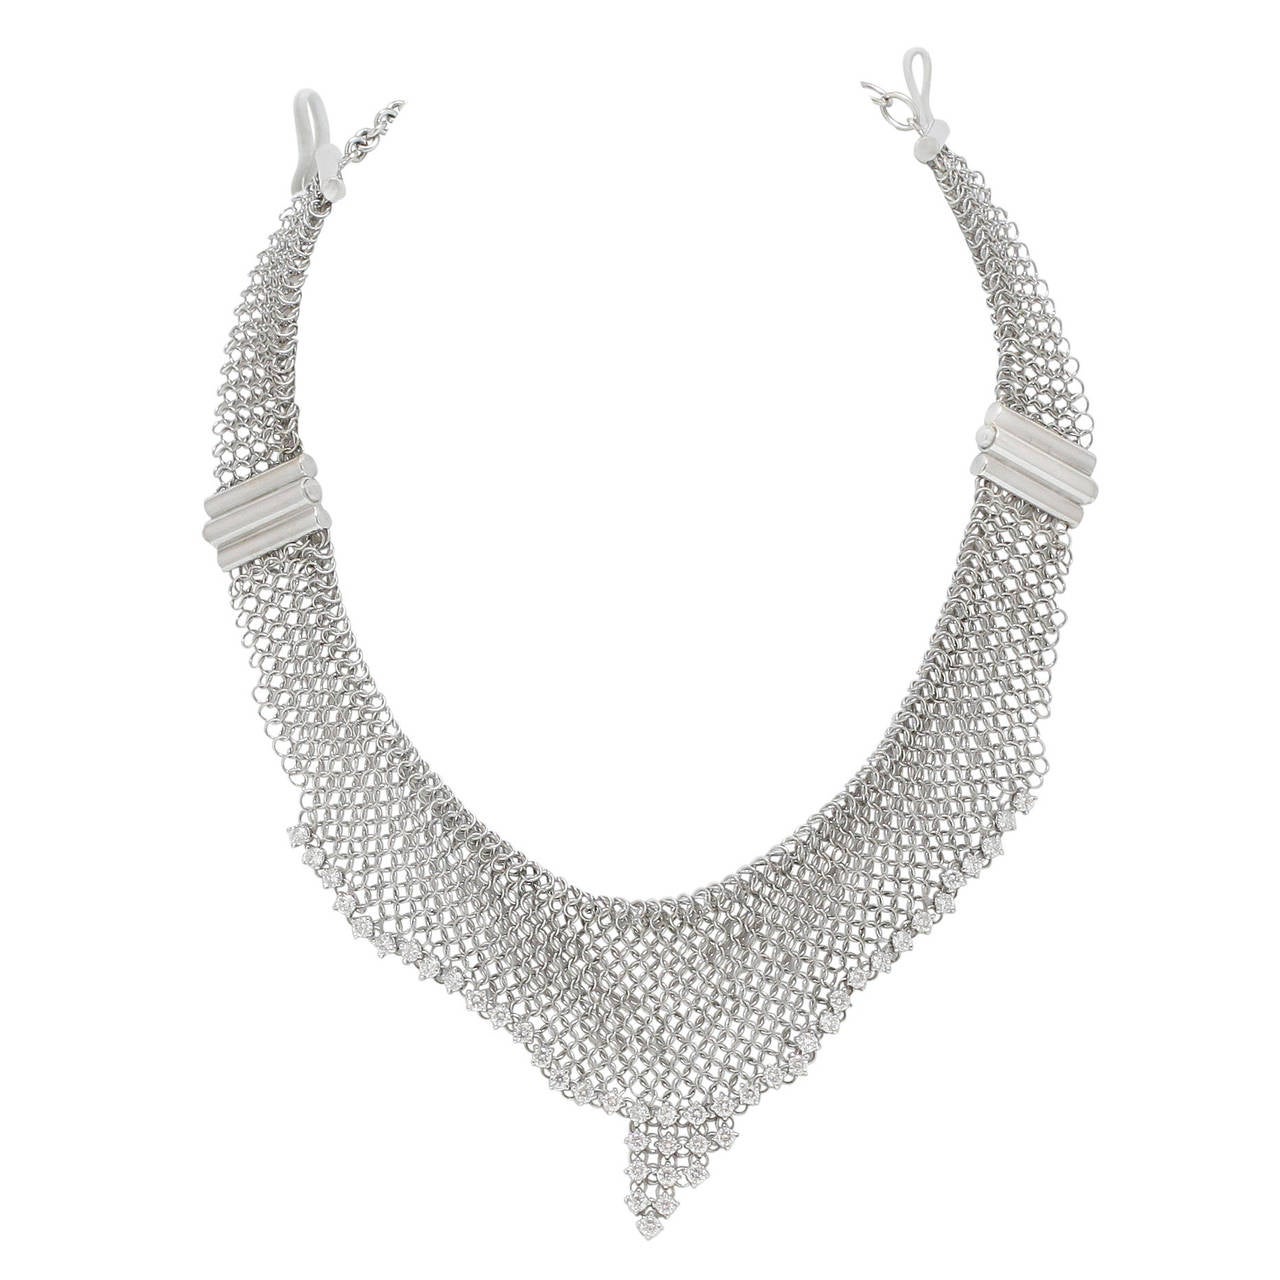 Burdeen's Sensational Diamond Mesh Choker Necklace For Sale